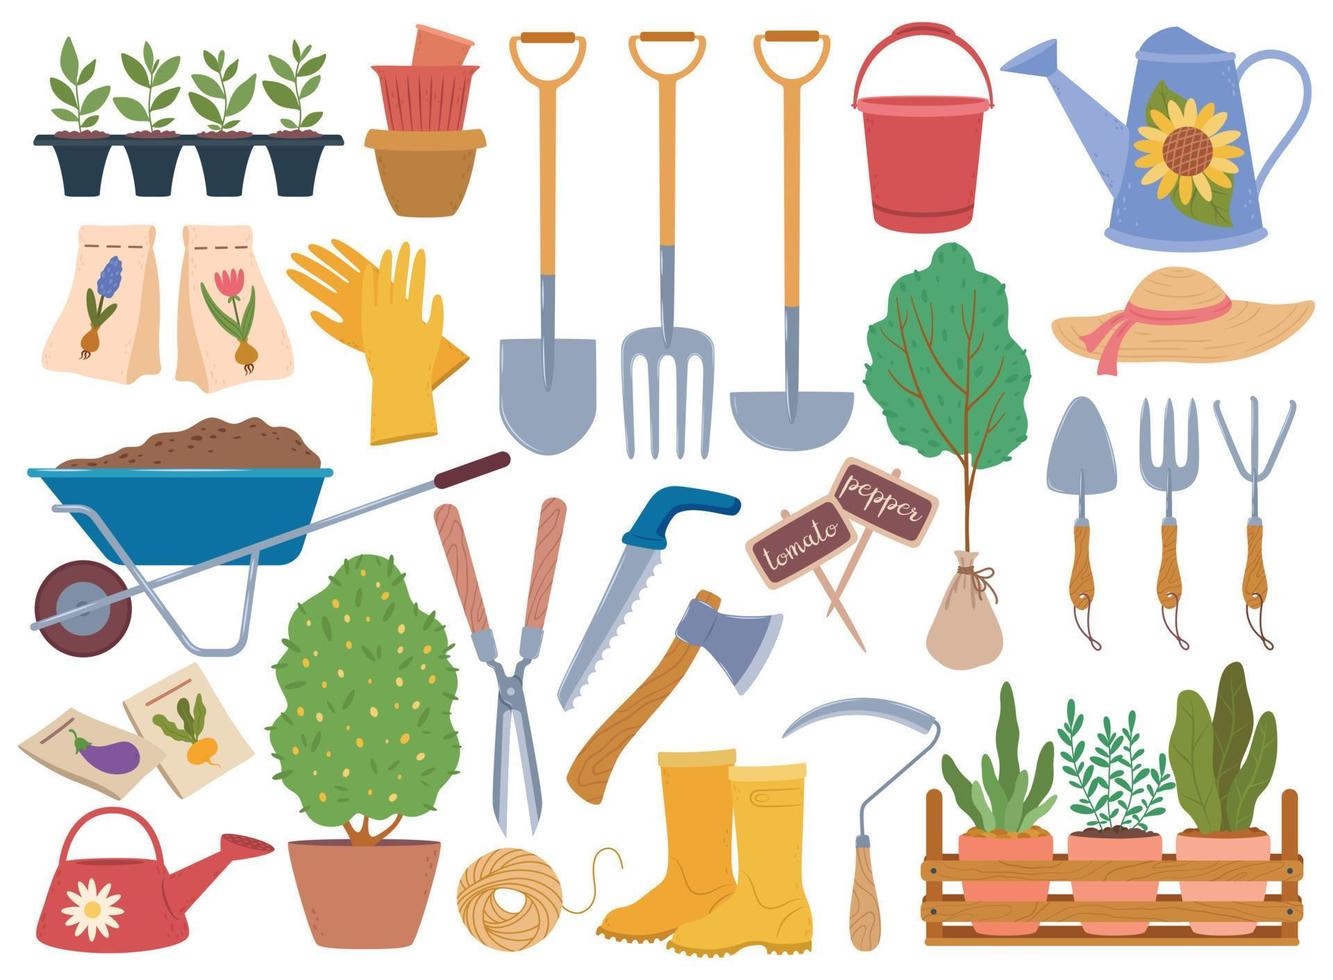 jardinería herramientas, primavera jardín equipo y plantas árbol joven. riego poder, guantes, carretilla con suelo. horticultura elementos vector conjunto